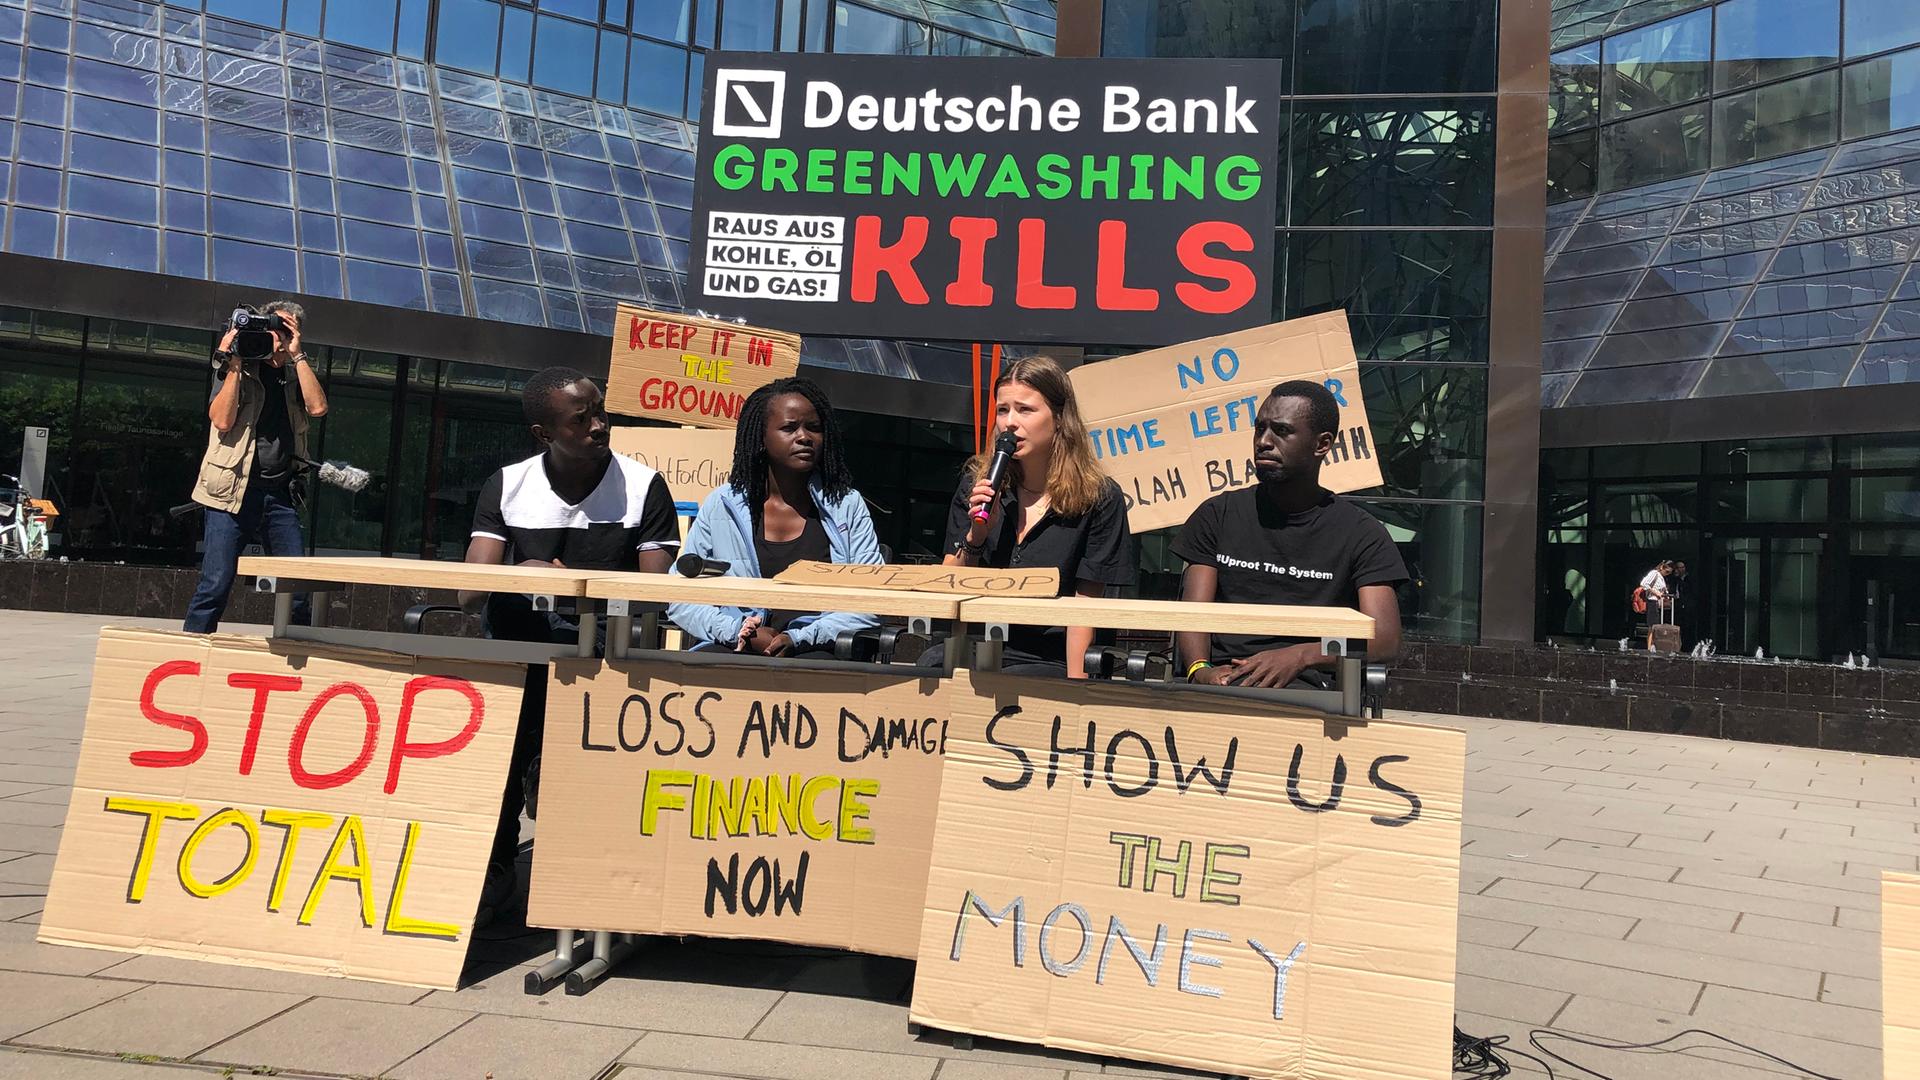 Neubauer-trifft-Sewing-Klimaaktivisten-protestieren-gegen-Greenwashing-bei-Deutscher-Bank